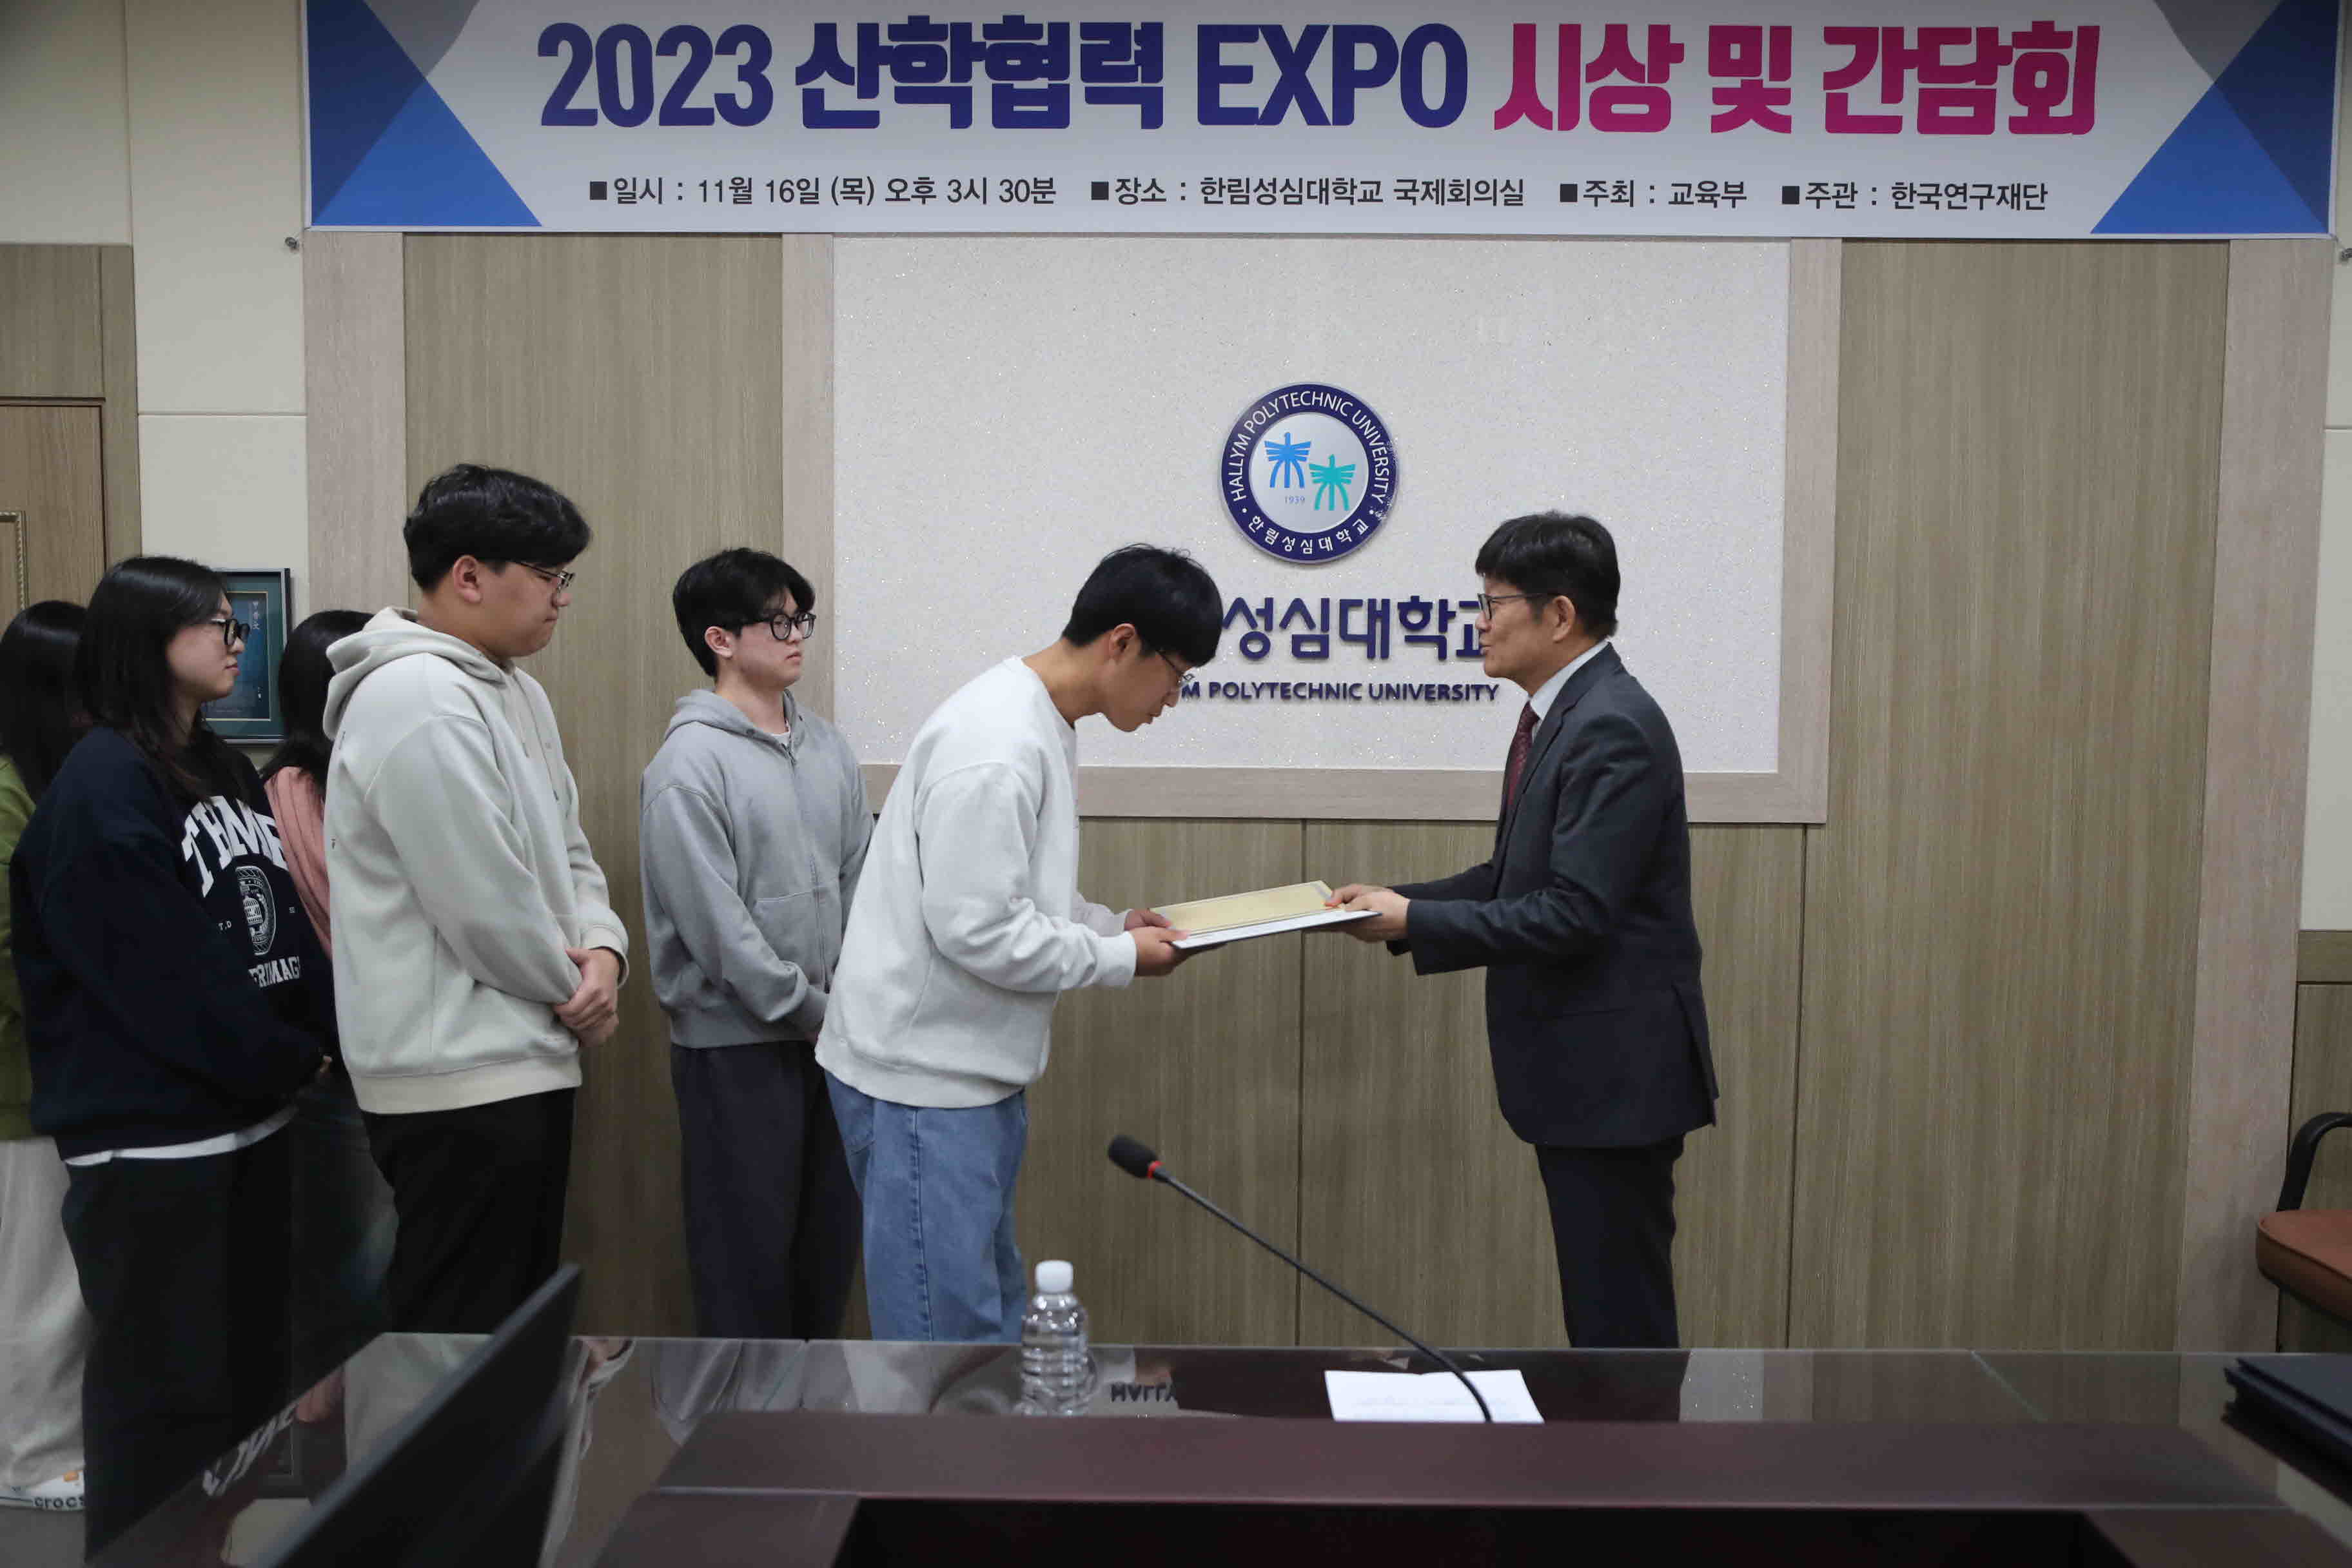 2023 산학협력 EXPO 시상 및 간담회